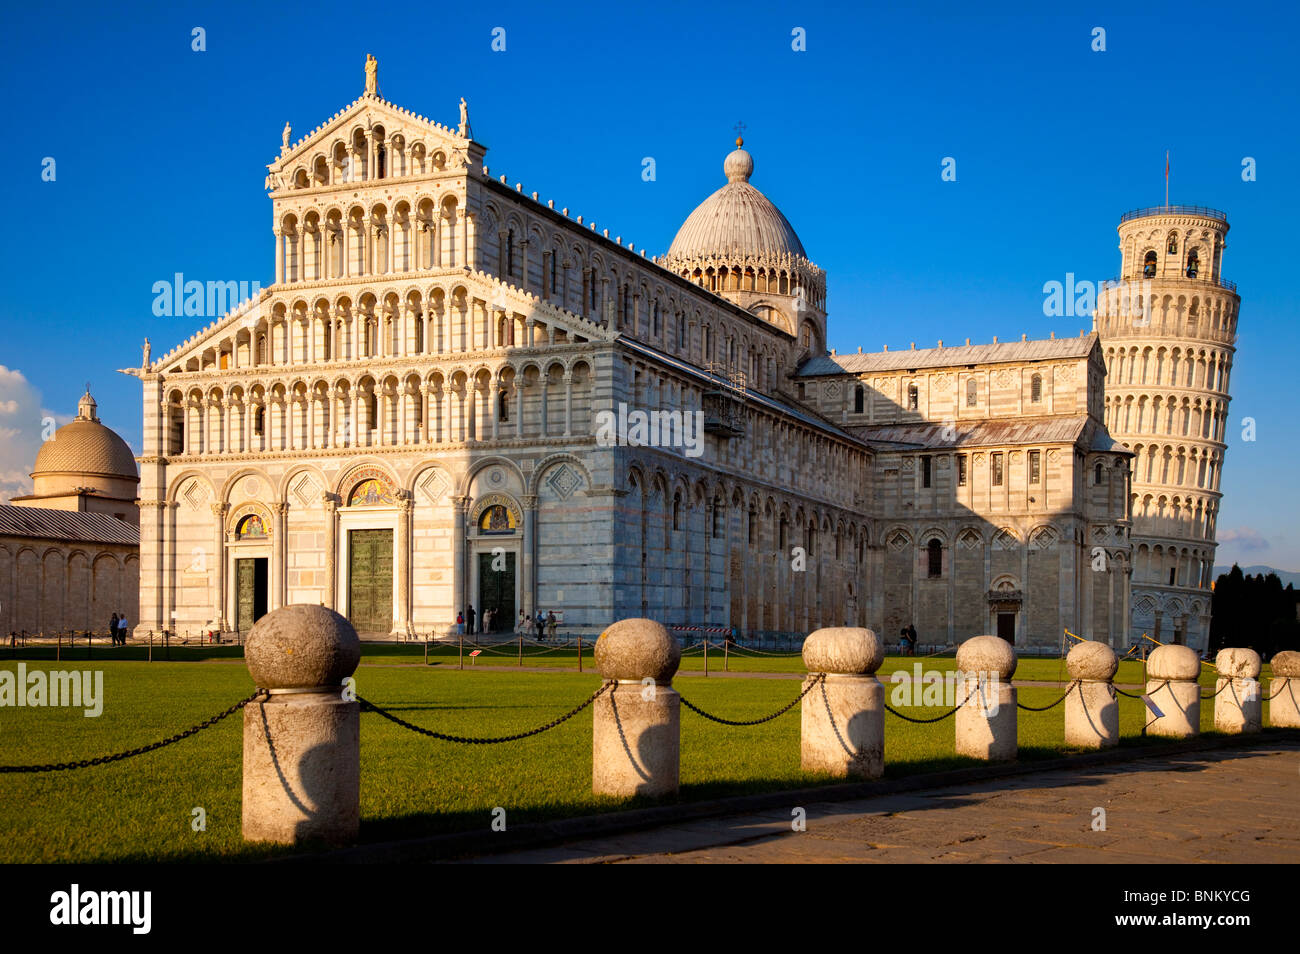 The Duomo Santa Maria Assunta, and the Leaning Tower, Pisa Tuscany Italy Stock Photo